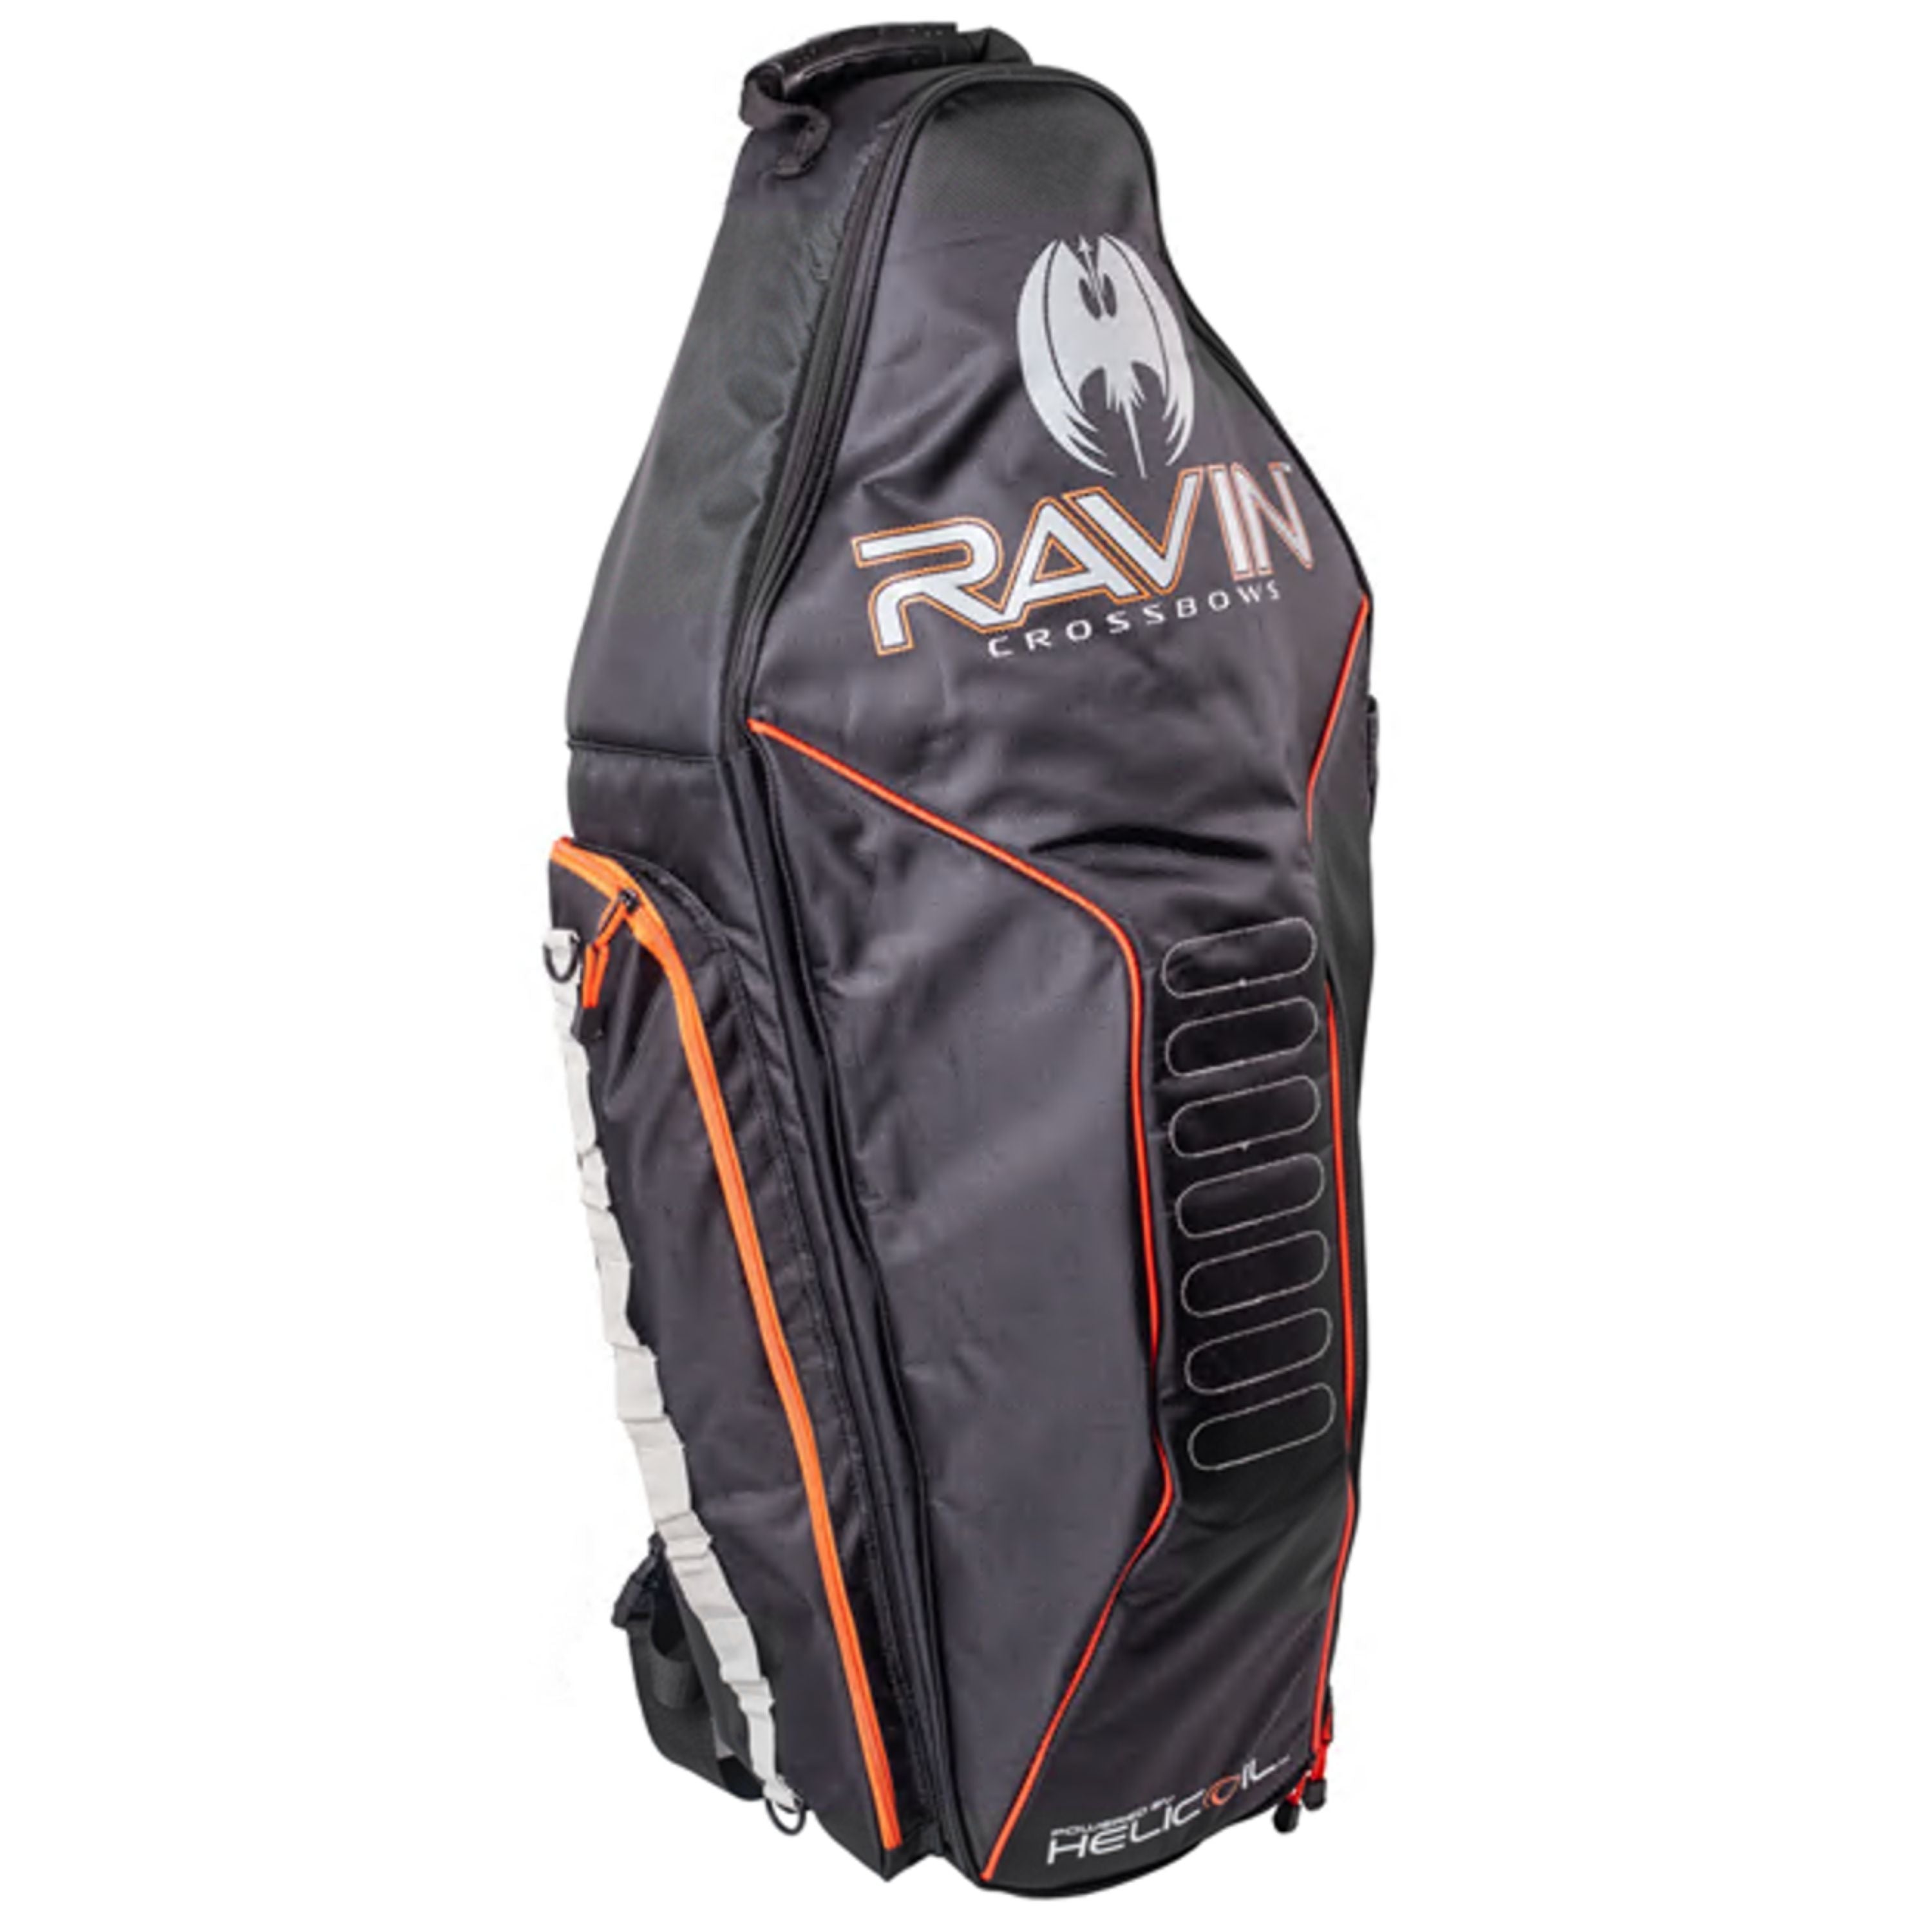 "Ravin" R10/R15/R20 Crossbow soft case